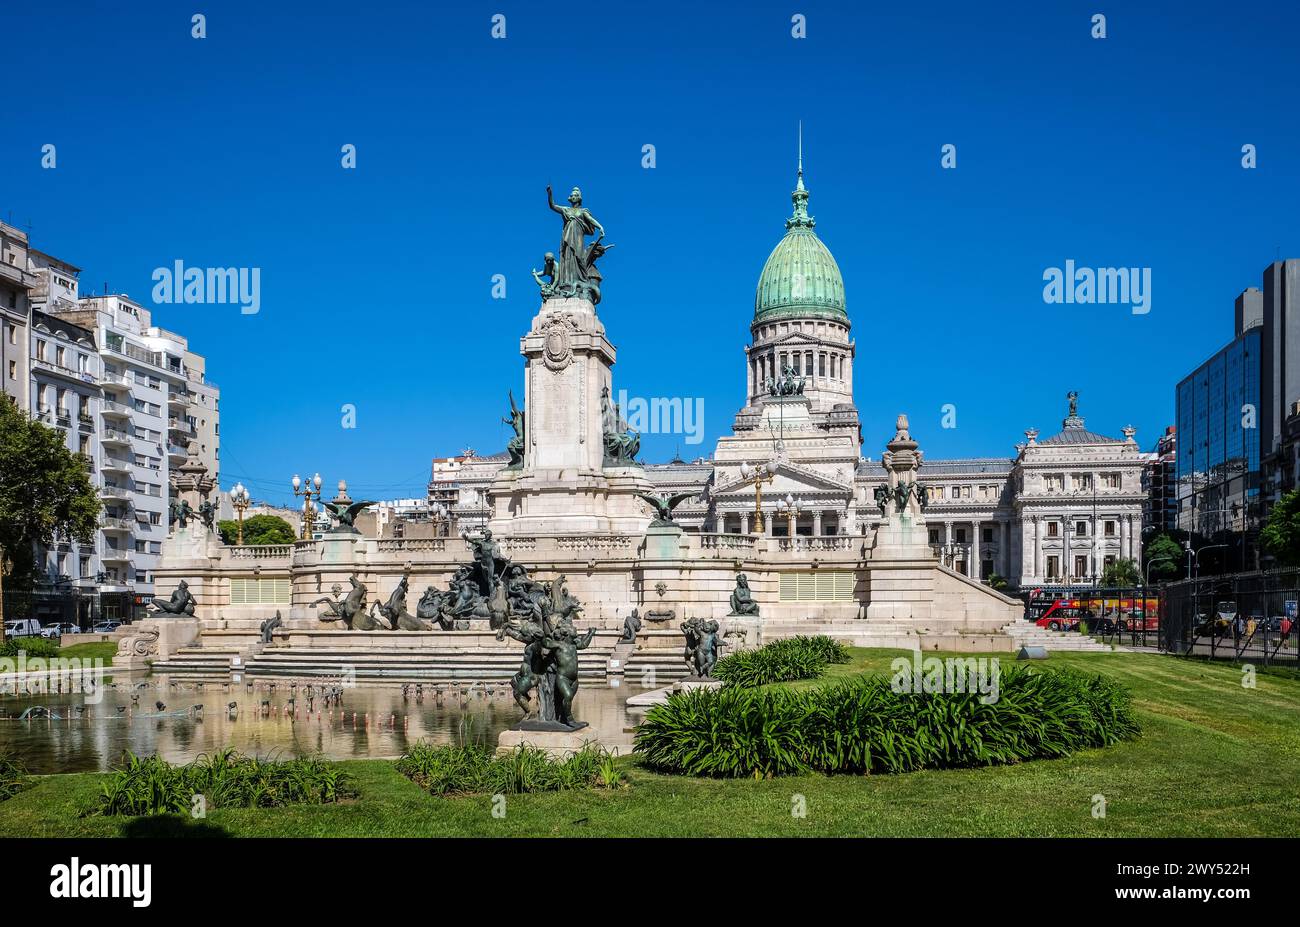 Buenos Aires, Argentinien - Parlament. Sitz ist der argentinische Kongresspalast (Spanisch: Palacio del Congreso de la Nacion Argentina) in Buenos Aires Stockfoto